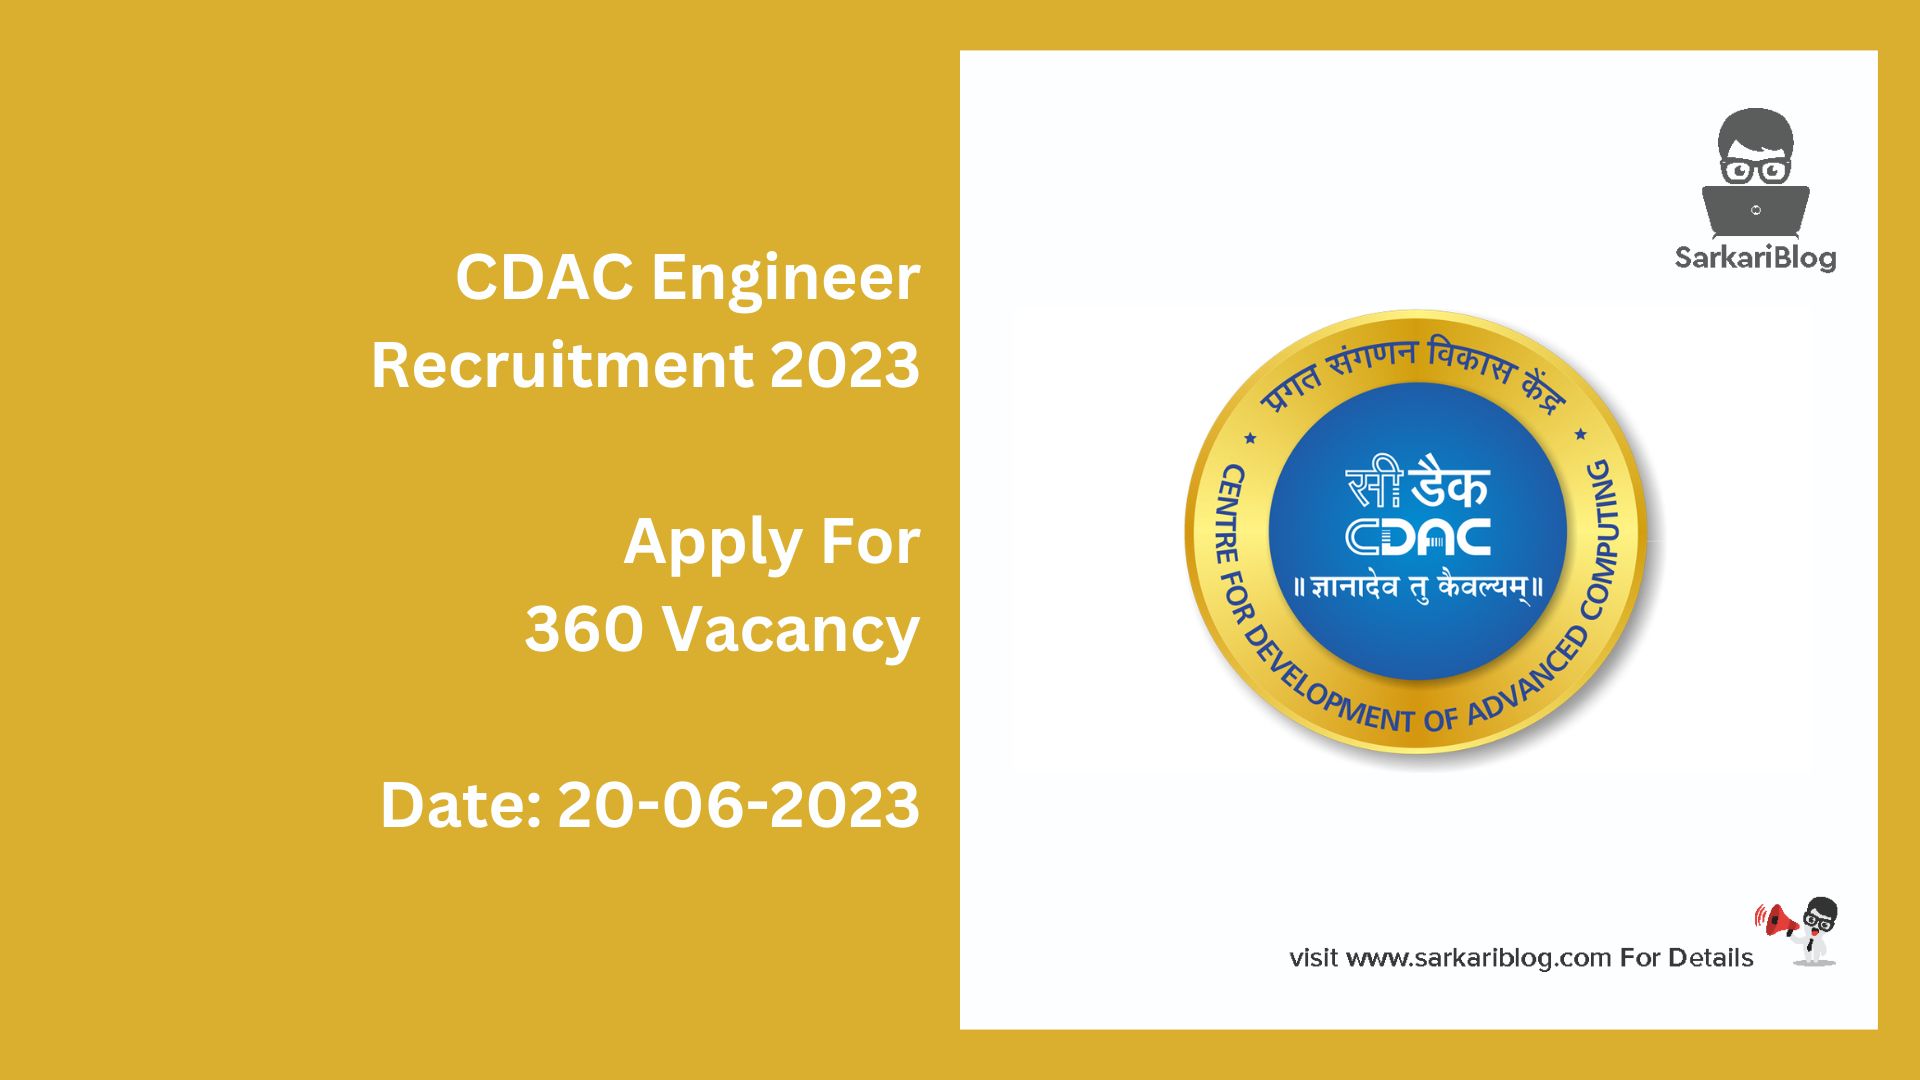 CDAC Engineer Recruitment 2023